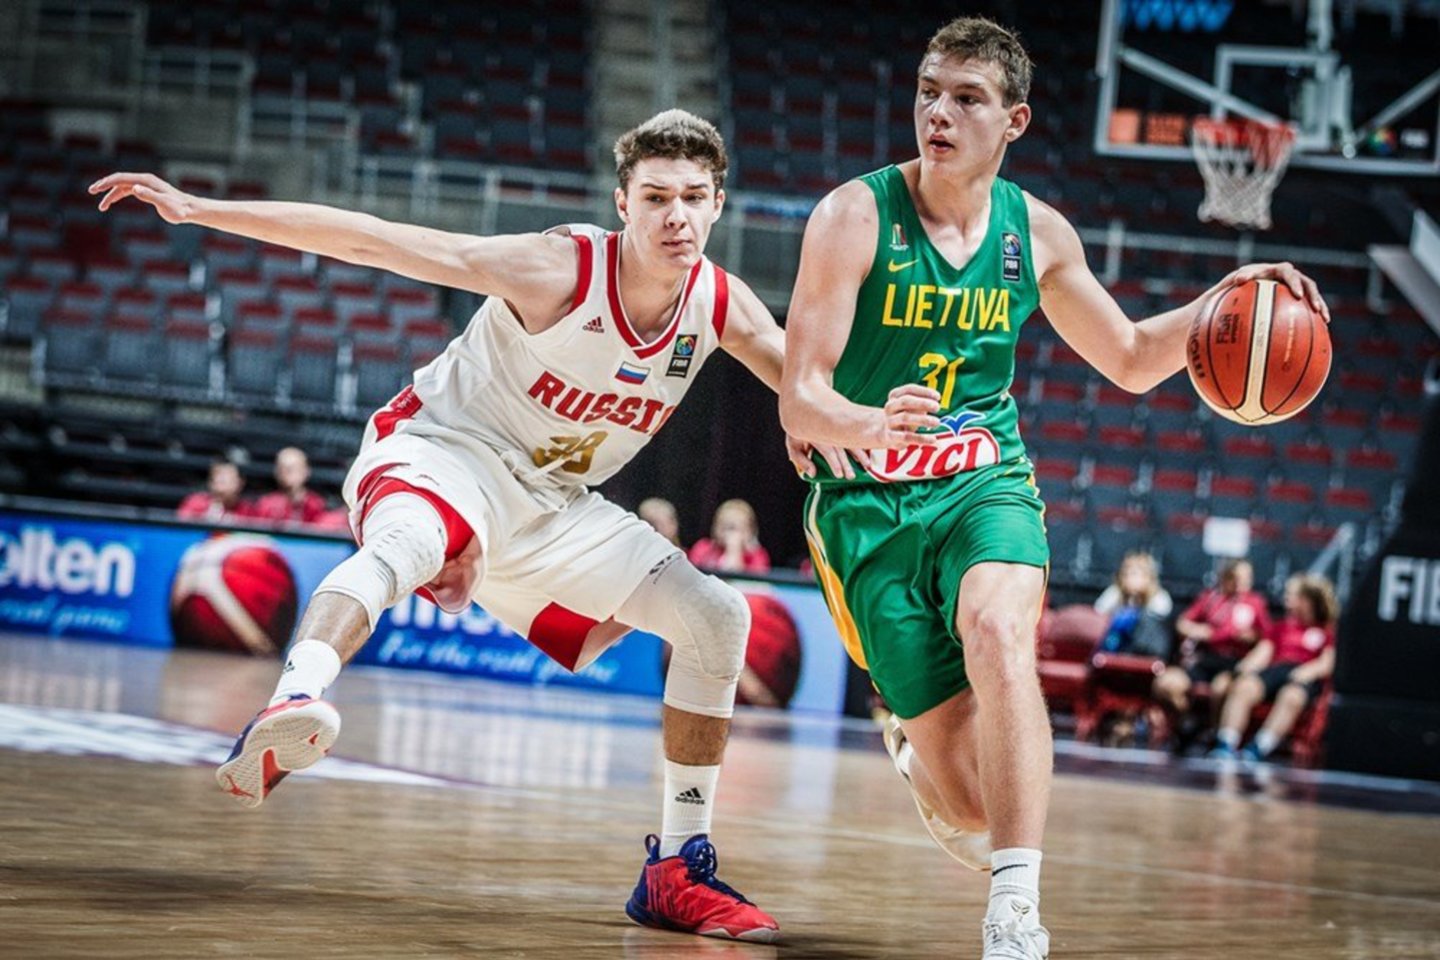  R.Jokubaitis kartu su Lietuvos jaunių rinktine sieks kelialapio į pasaulio čempionatą.<br> FIBA nuotr.